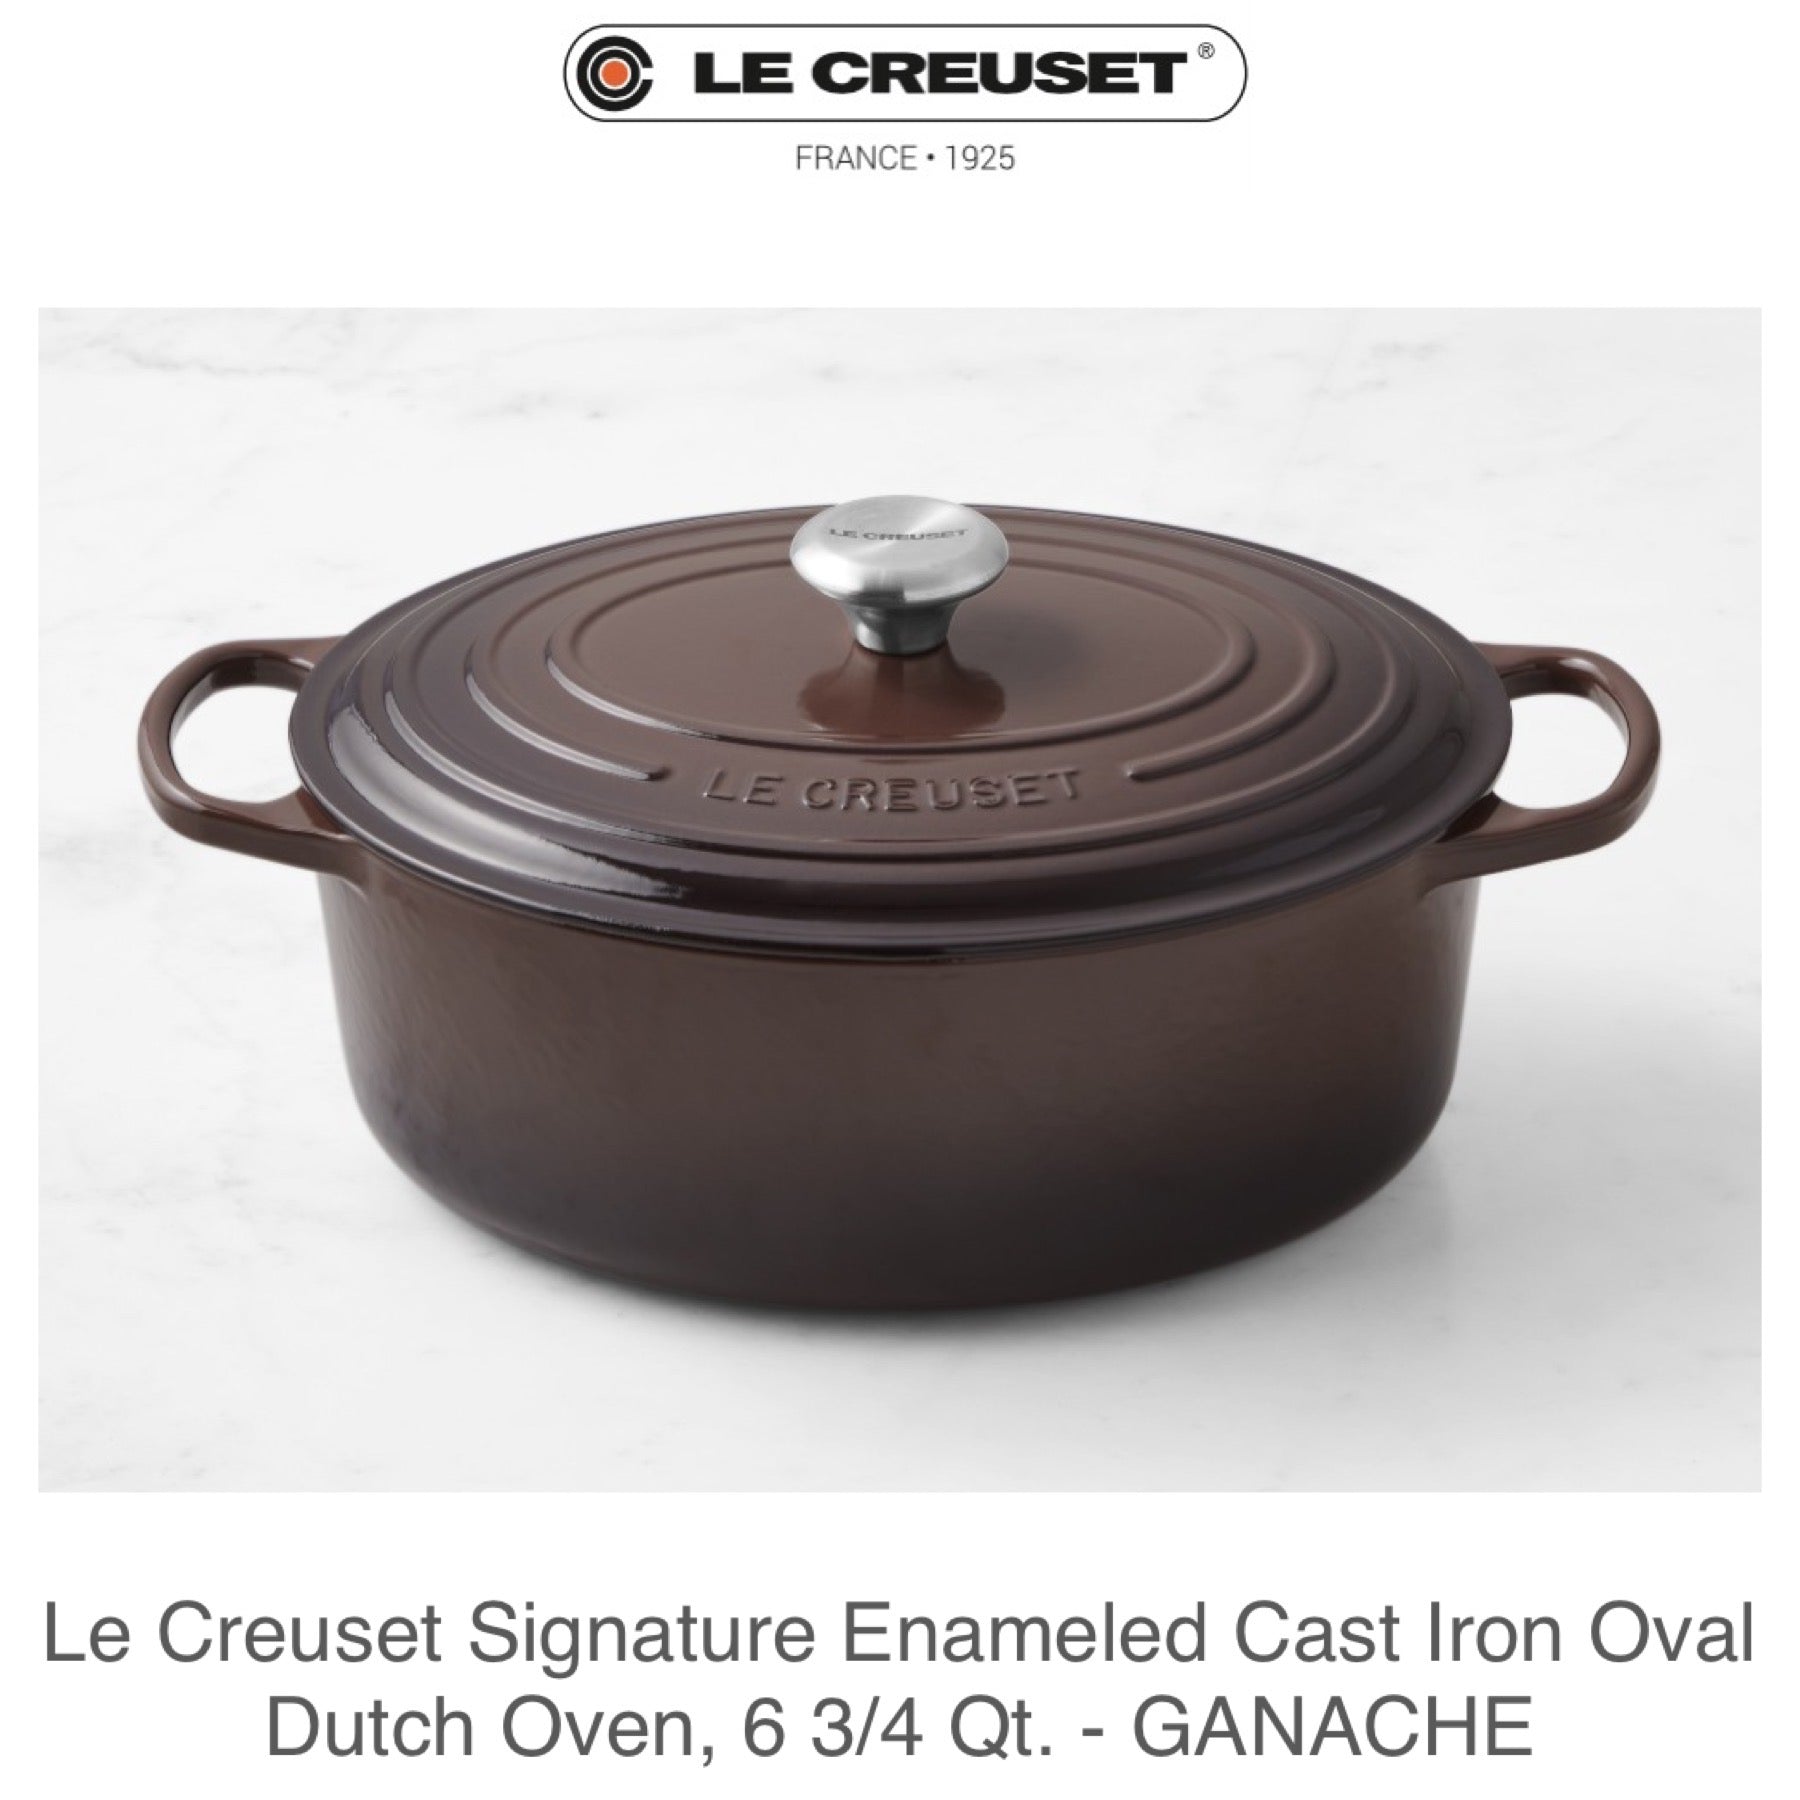 Le Creuset Signature Enameled Cast Iron Deep Dutch Oven, 5.25QT on